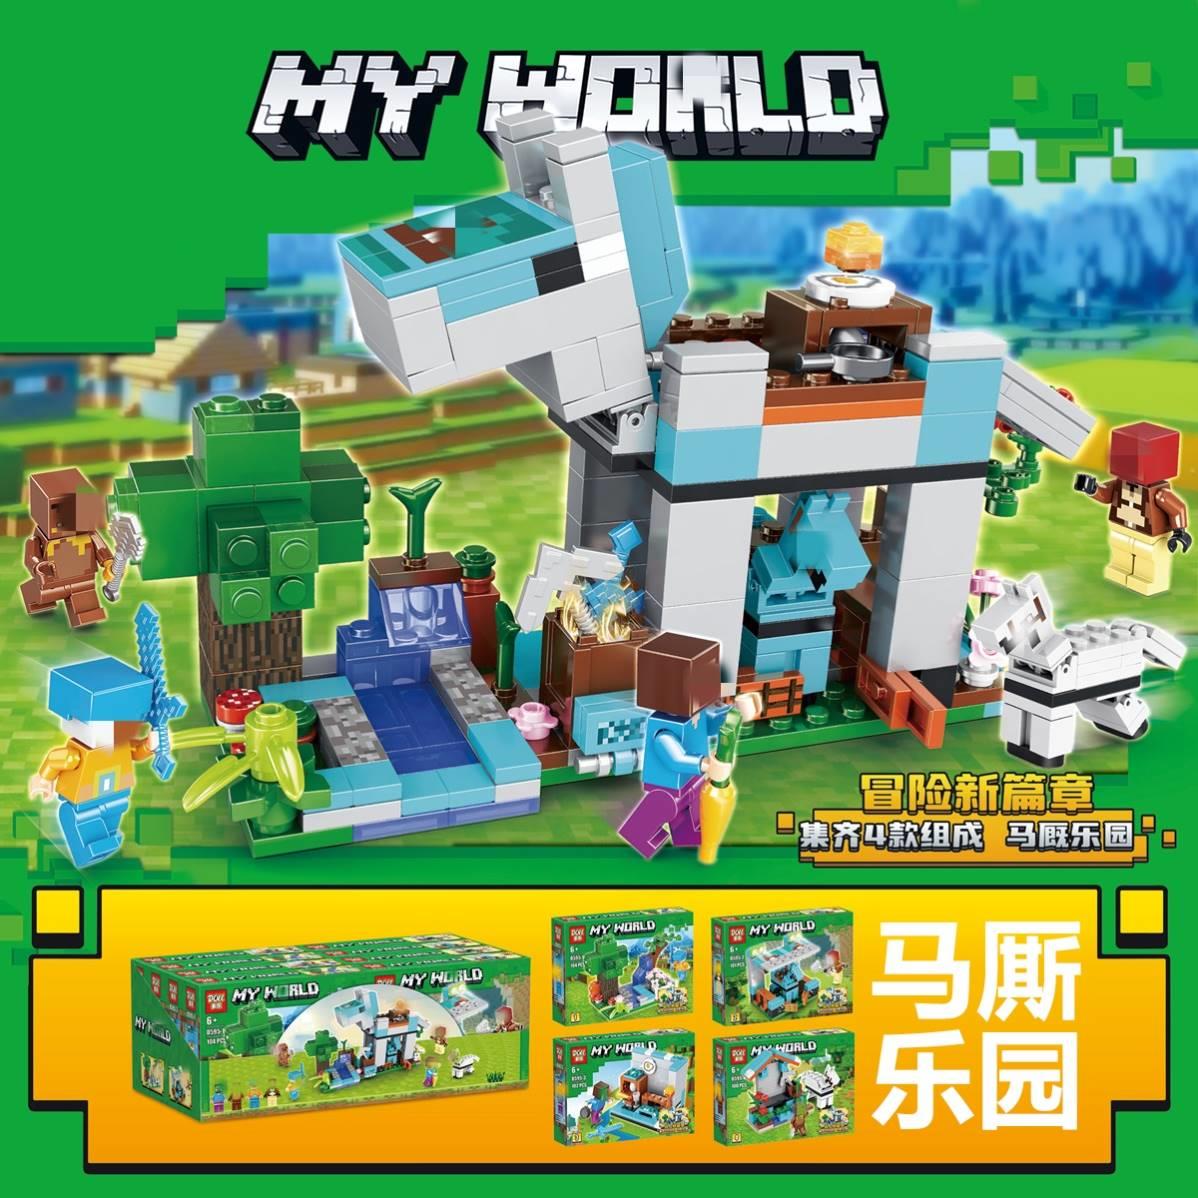 我的世界游戏周边场景模型玩具套装寒冰飞龙马厮乐园拼装积木人仔